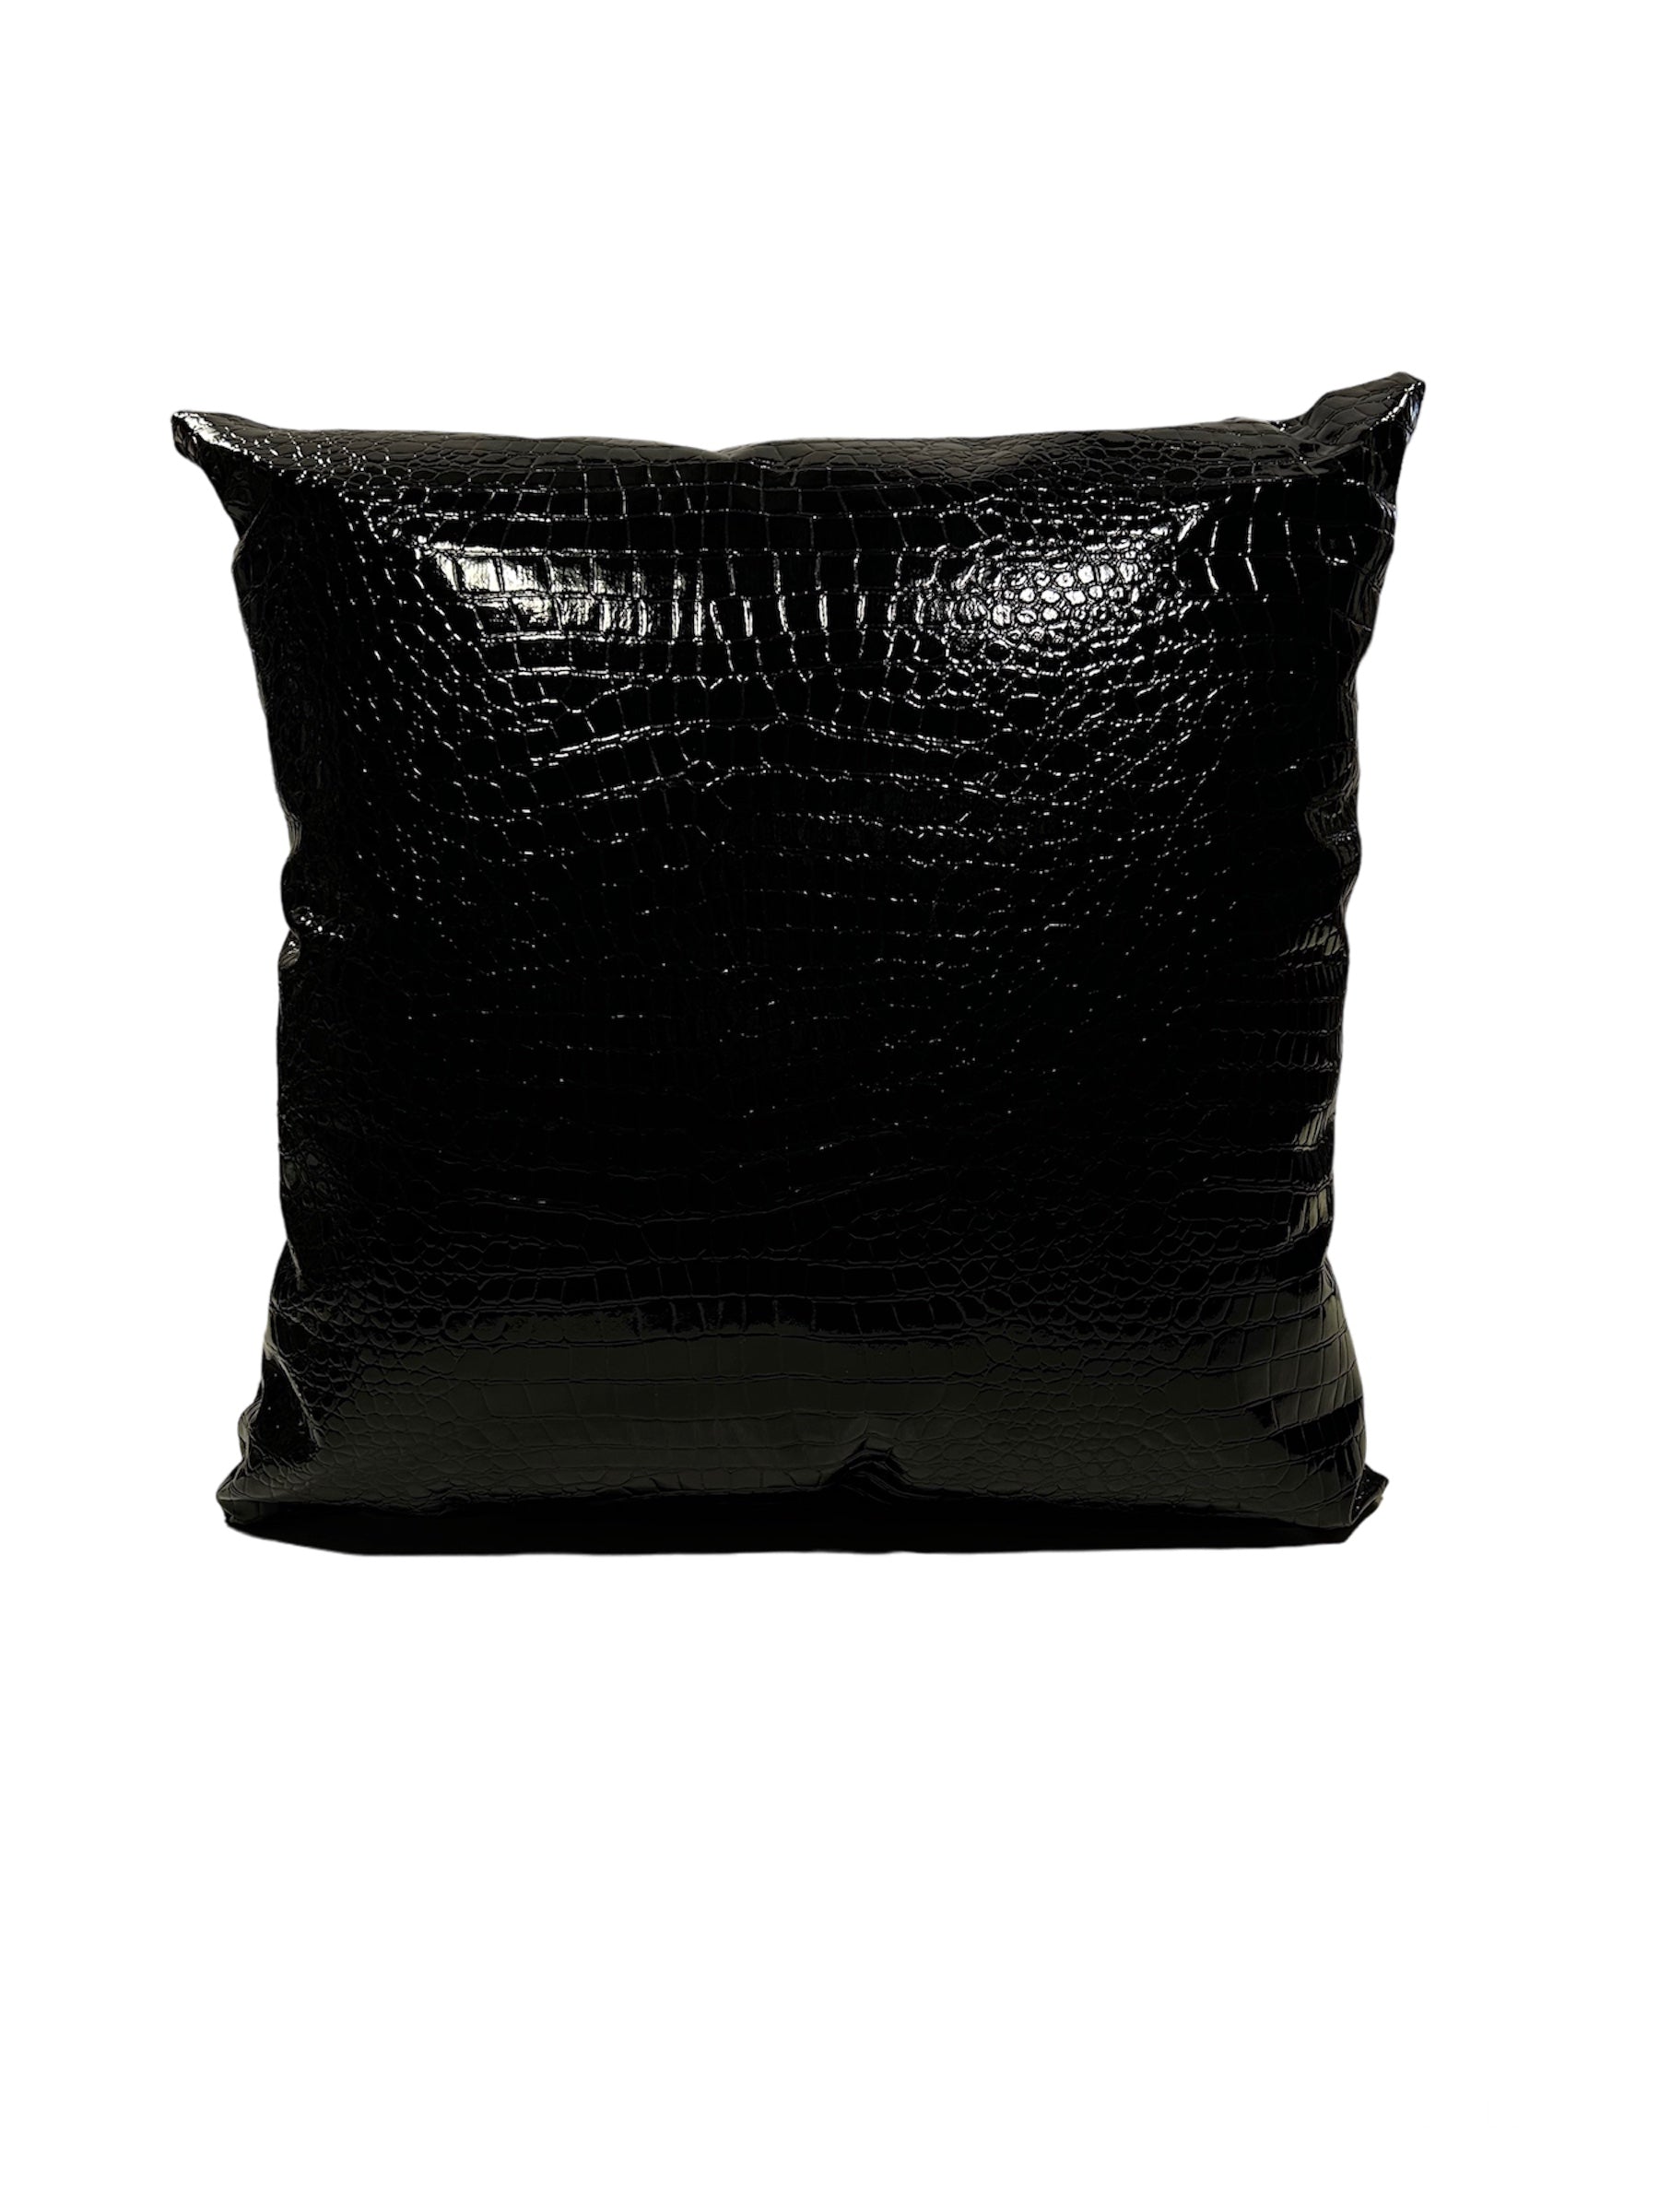 Cuscino in PVC semirigido con effetto pitonato di colore nero lucido. Interno removibile attraverso una cerniera. Dimensioni: cm 60 x 60. In negozio e online su tuttochic.it